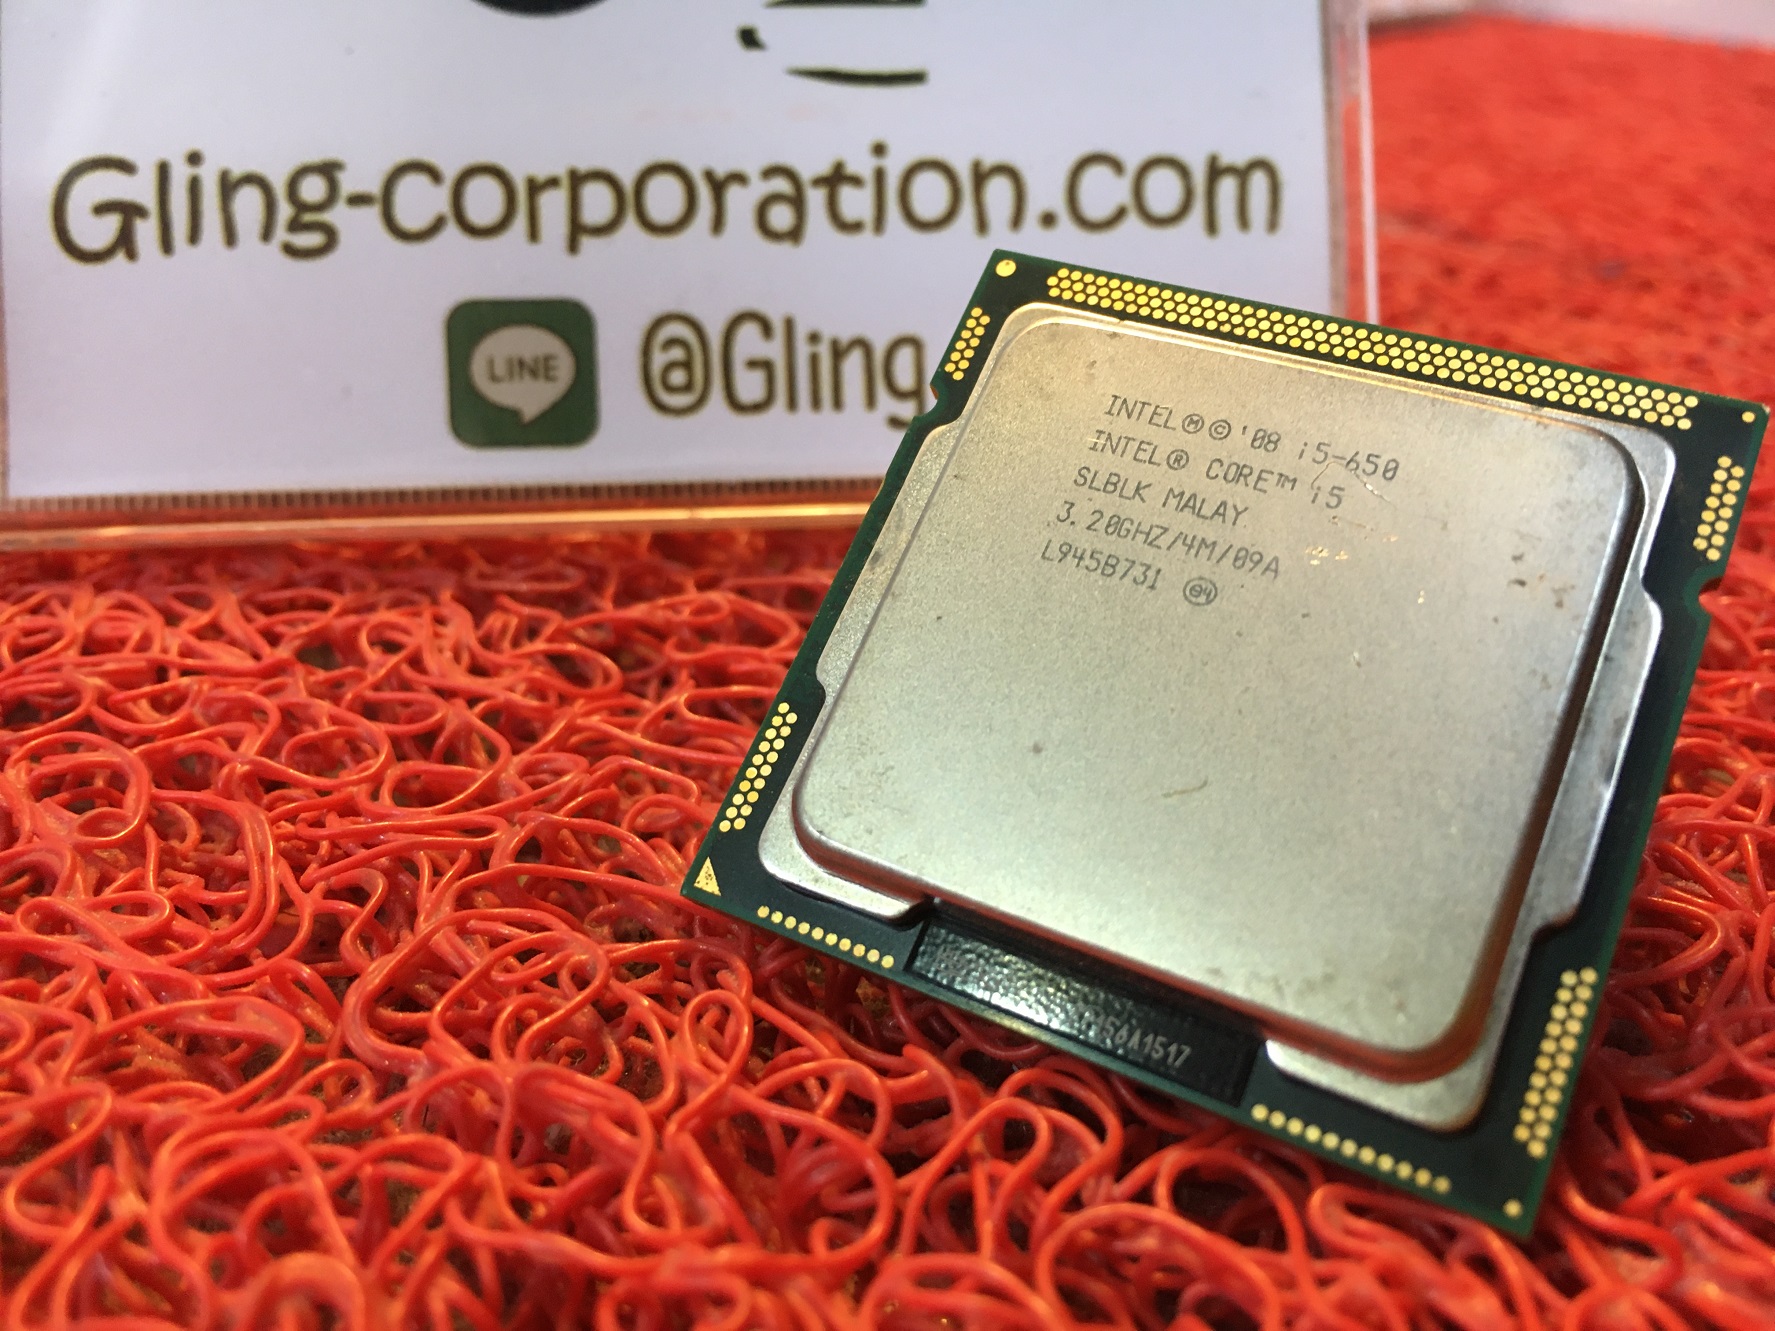 [ CPU ] INTEL Core i5-650 LGA1156 2.66GHZ L945B731 • Gling-Corp